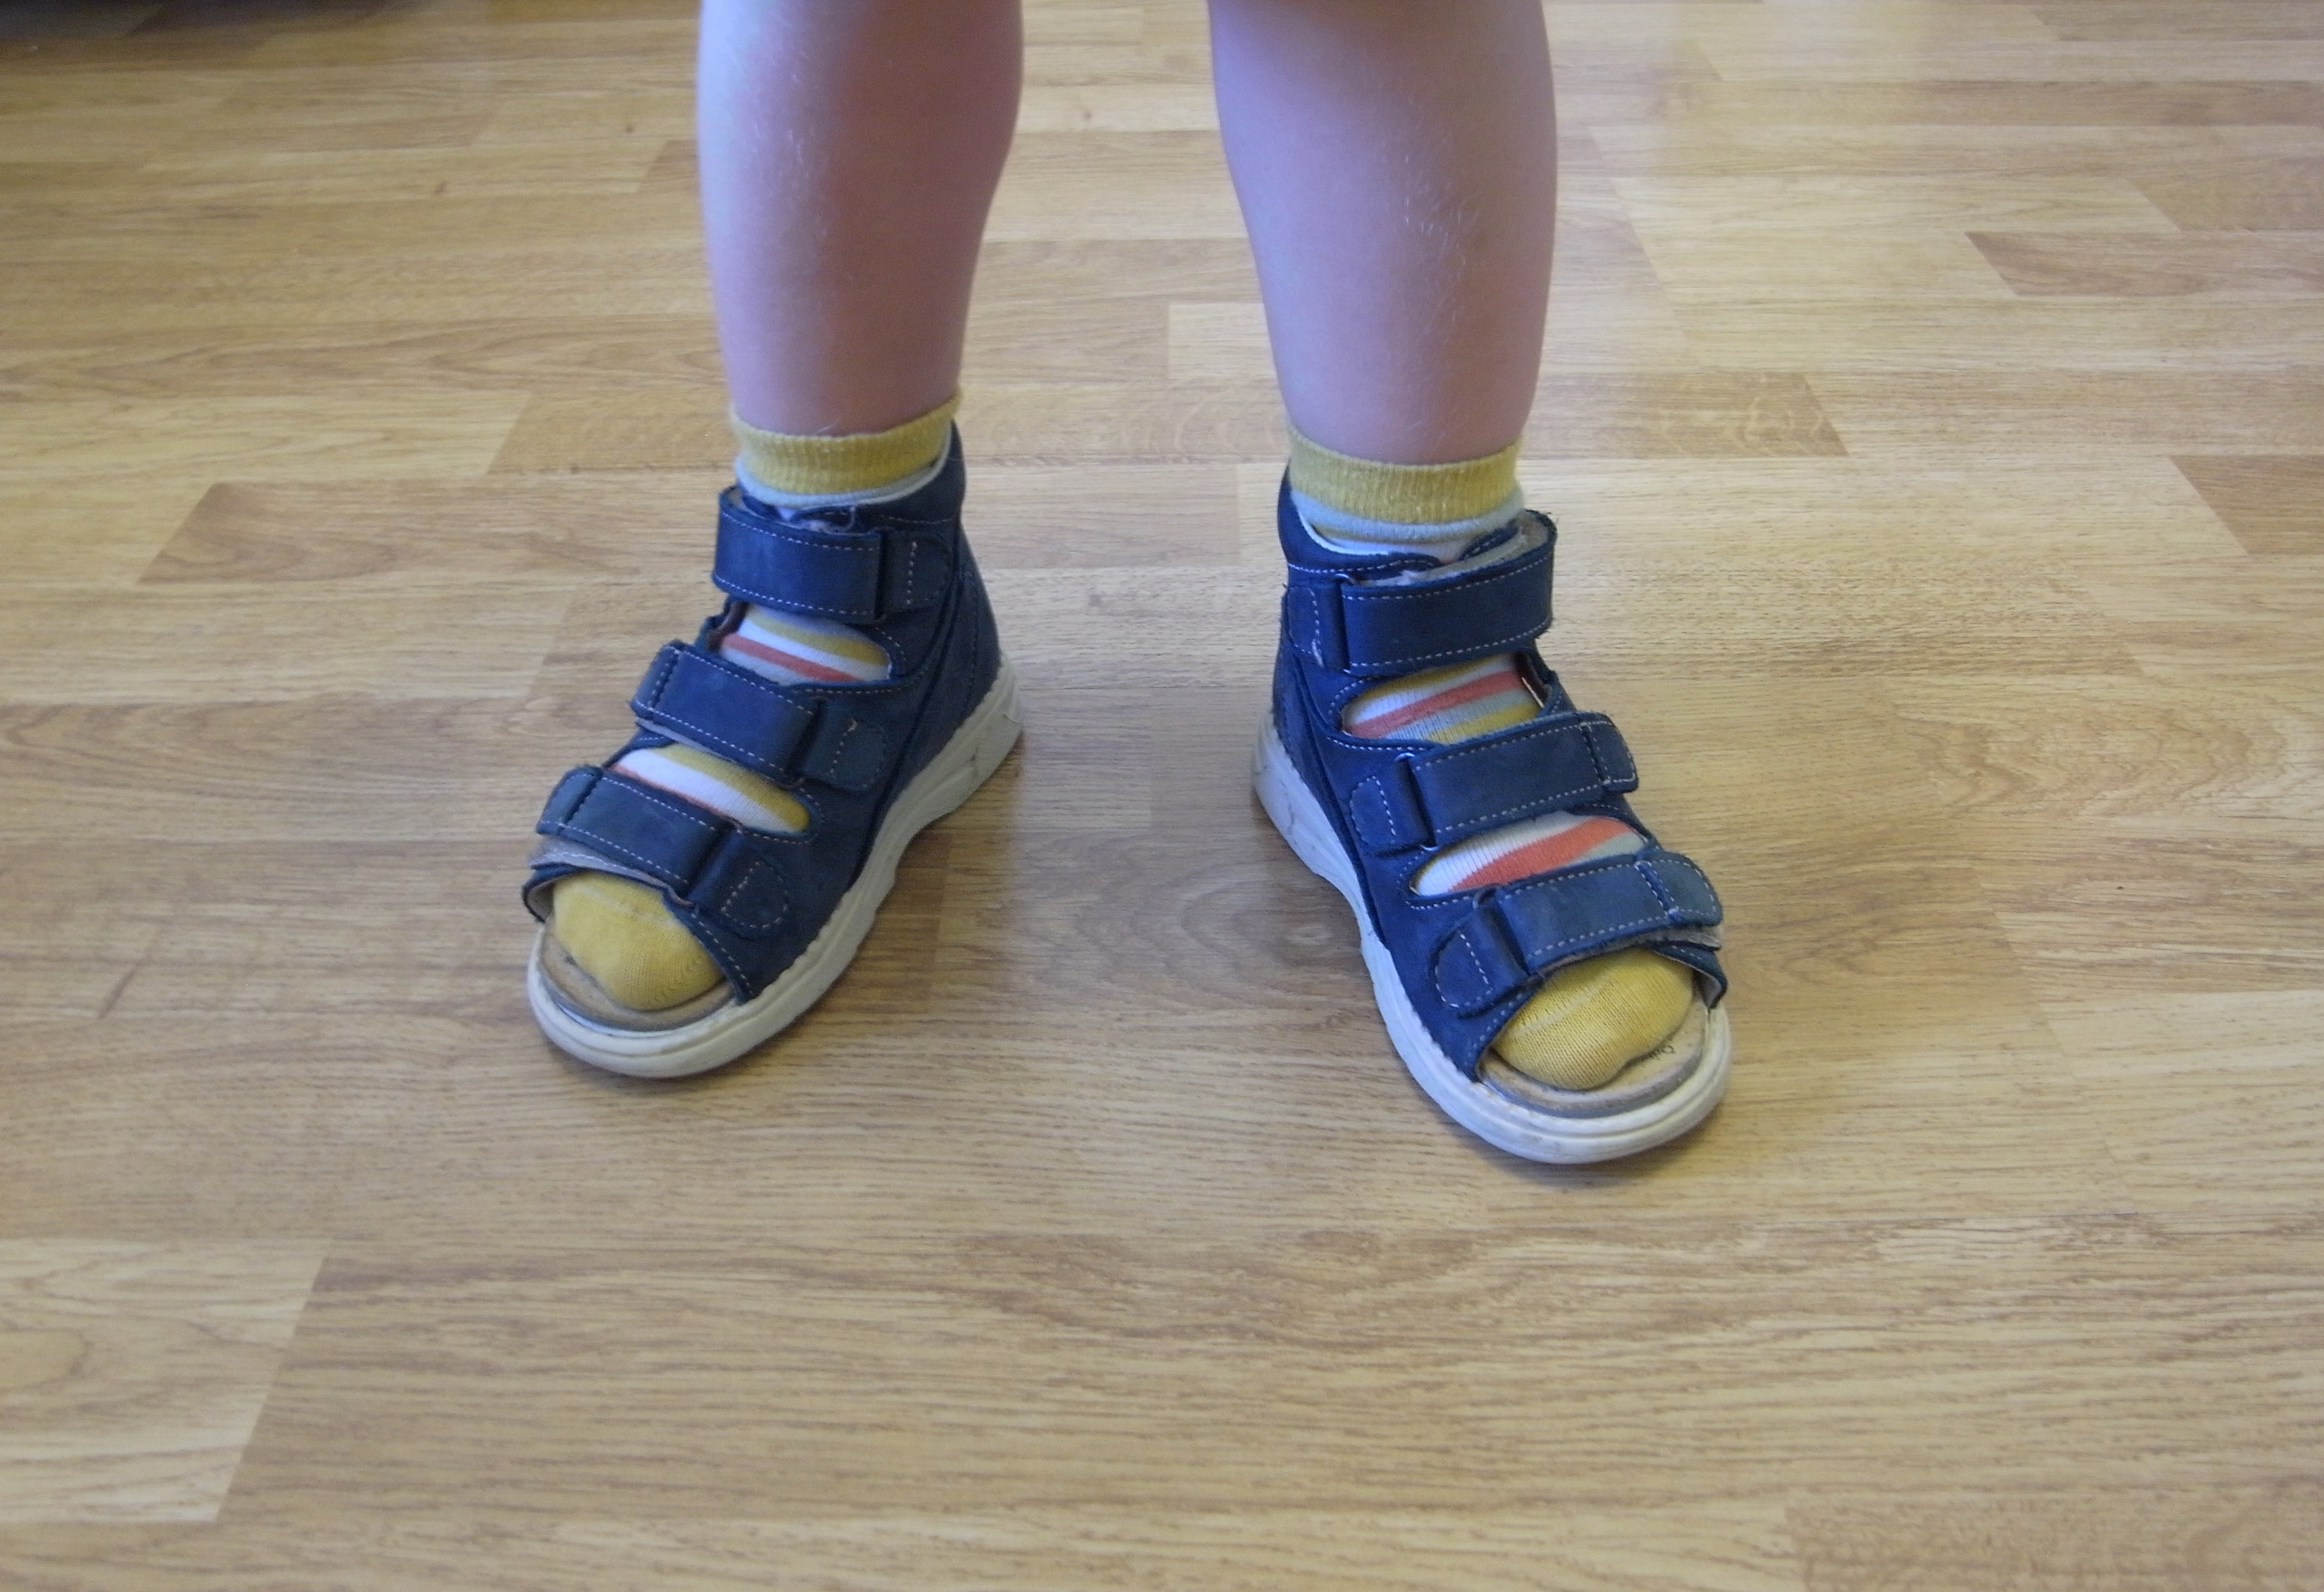 Как правильно сандаль или. Ортопедическая обувьваьгус дети. Ортопедическая обувь детская вальгус. Ортопедические сандалии для мальчика вальгус. Ортопедические сандали для мальчика вальгус 27 размер.